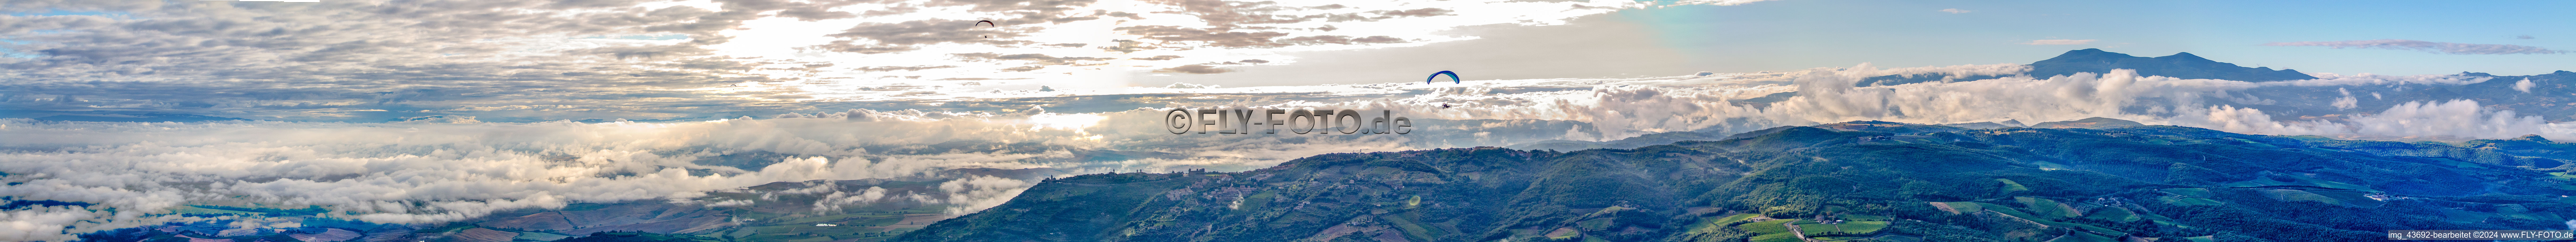 Panorama - Perspektive der Gipfel in der Felsen- und Berglandschaft mit Wolken und Gleitschirm in Montepulciano in Toskana im Bundesland Toscana, Italien